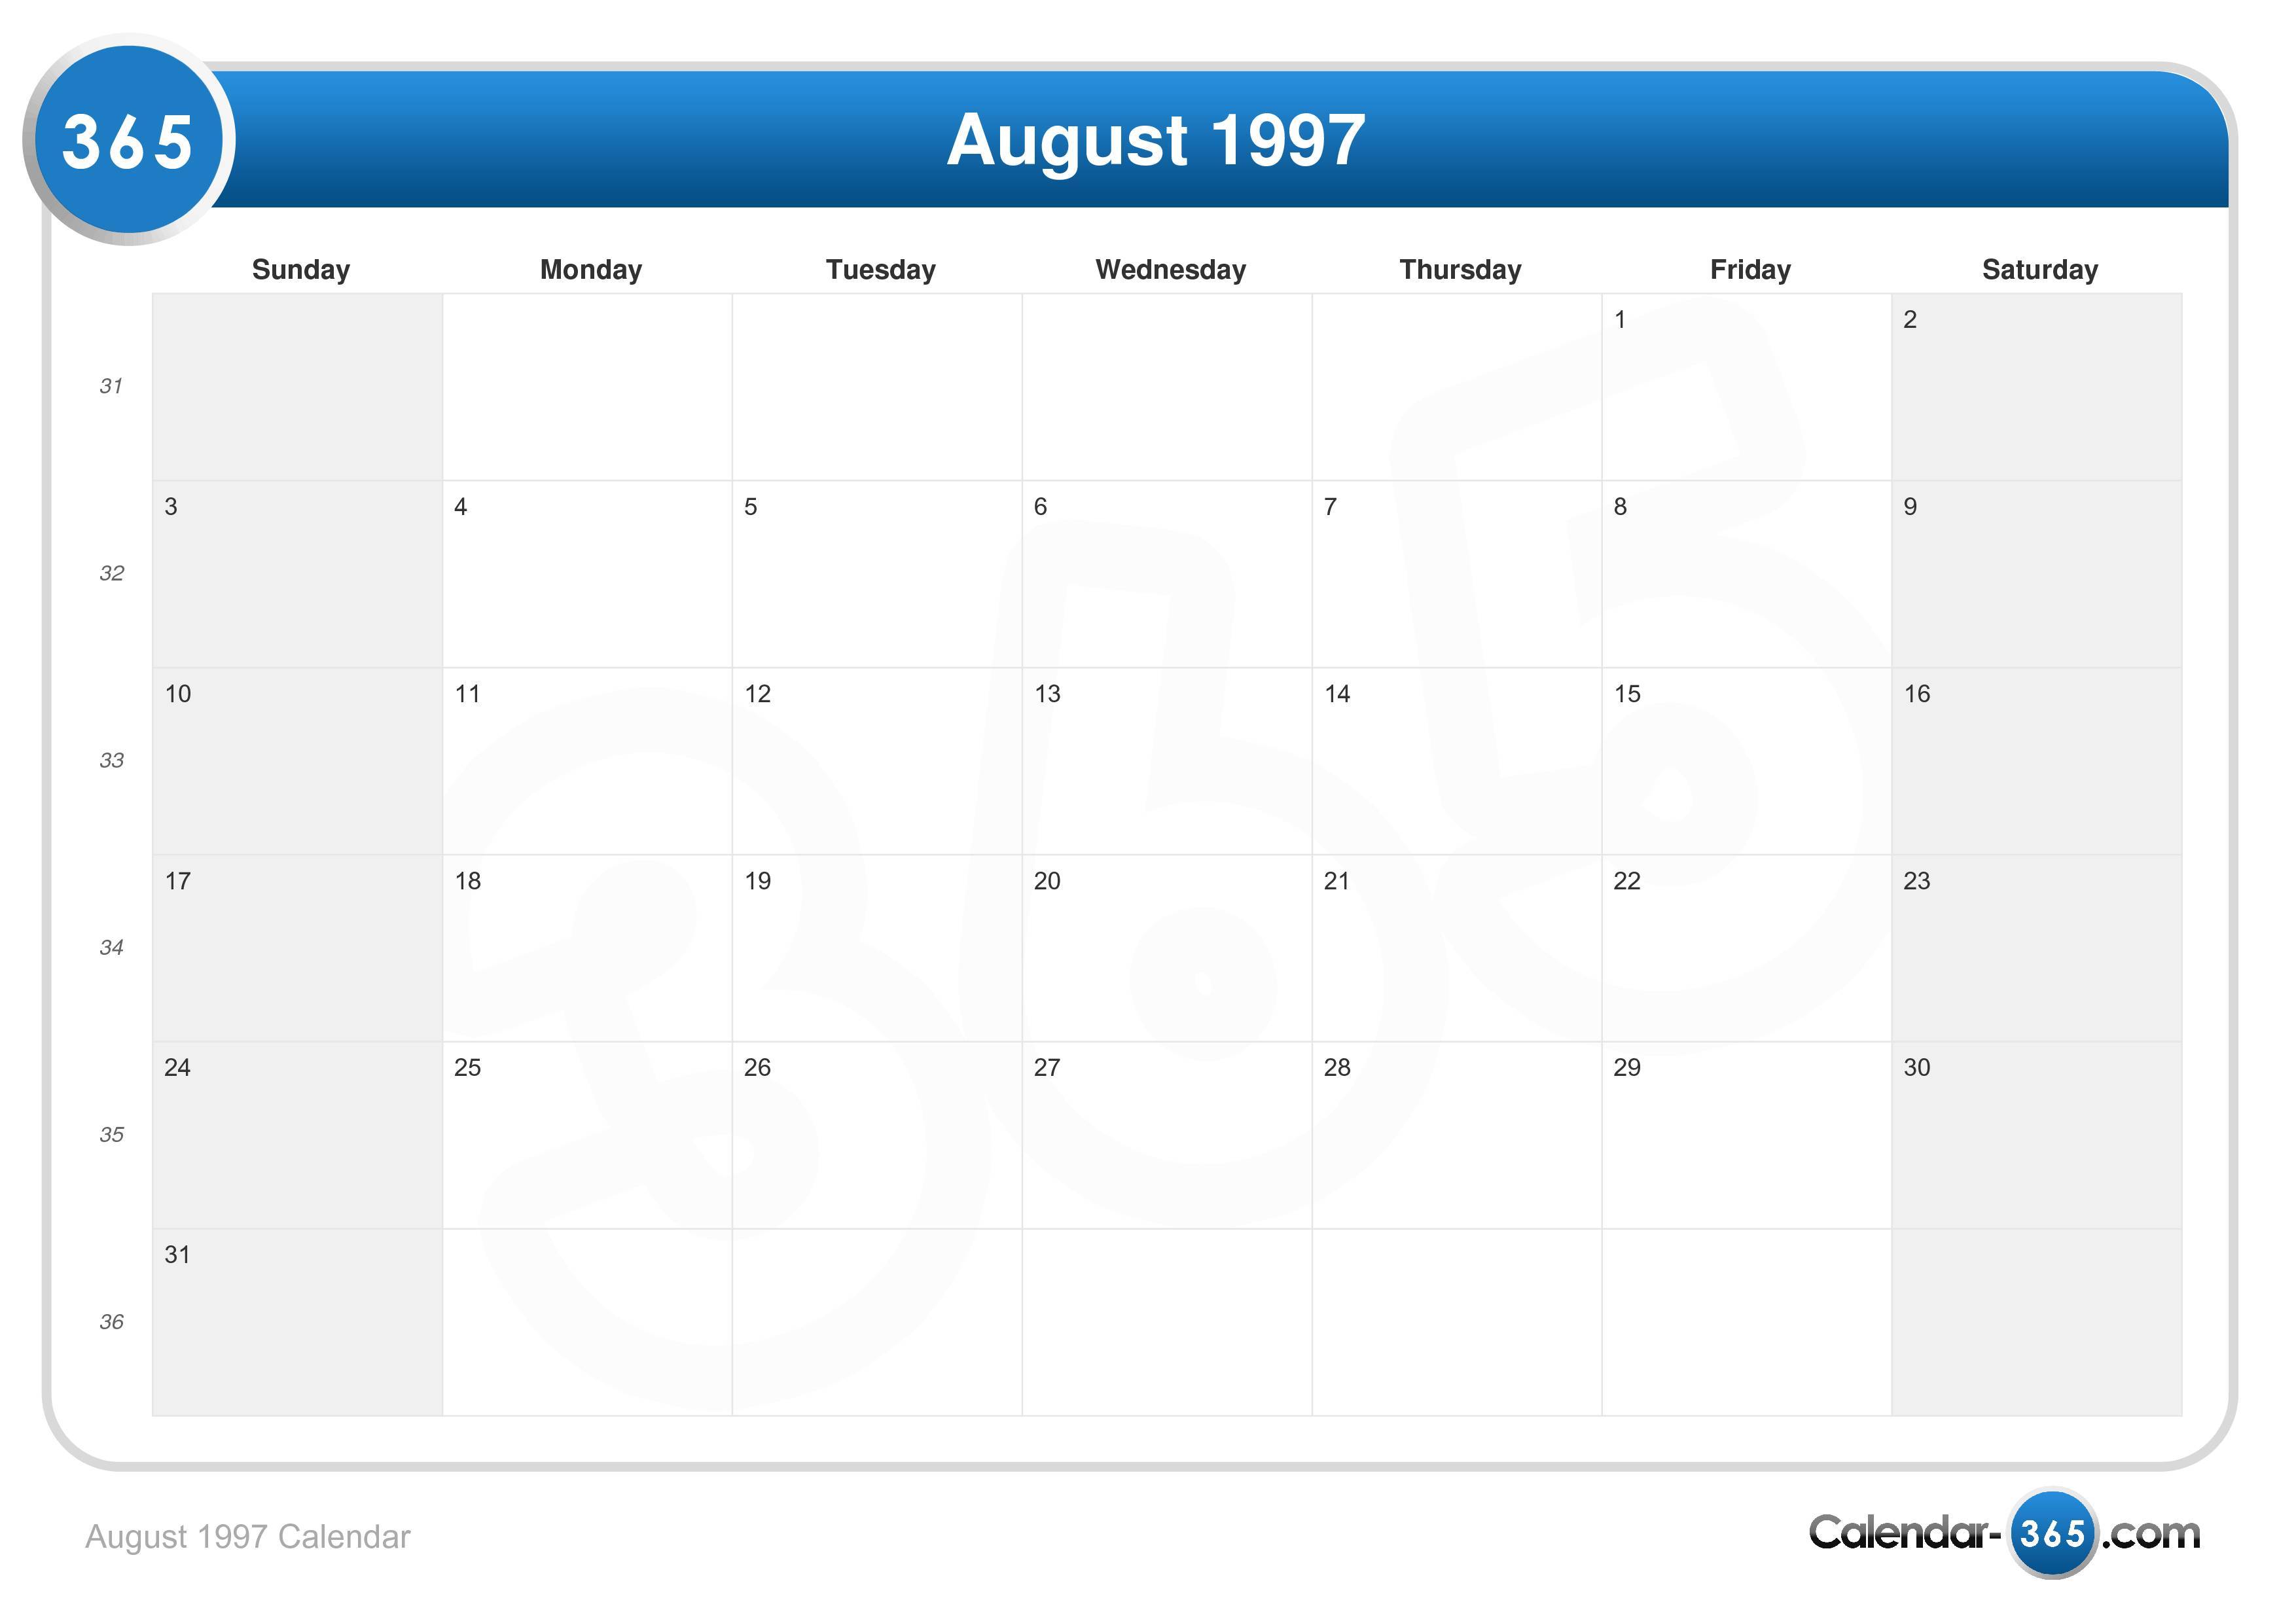 August 1997 Calendar